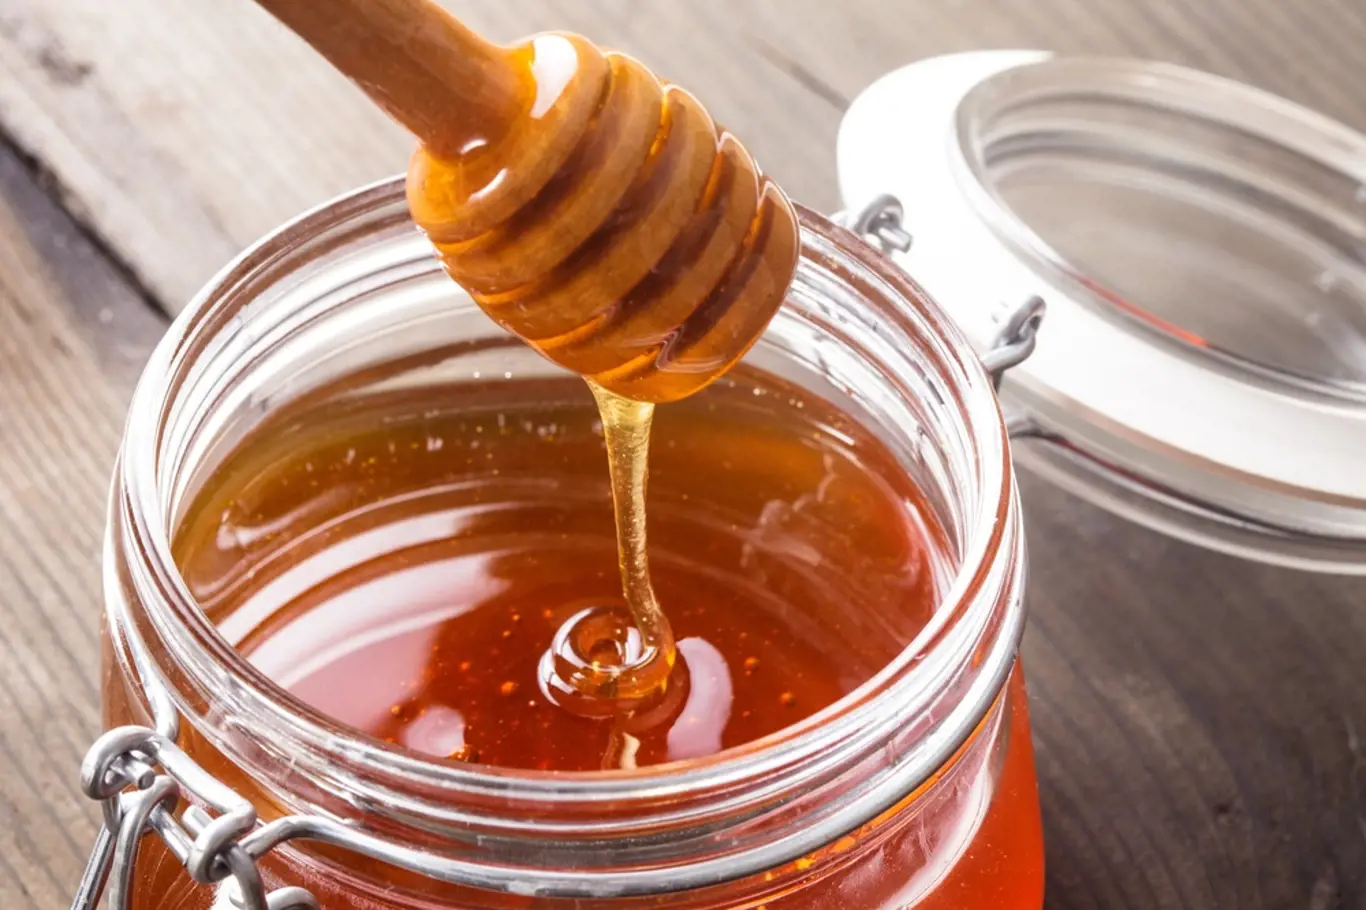 Věděli jste, že med může obsahovat enzymy na podporu růstu kořenů v rostlinách?